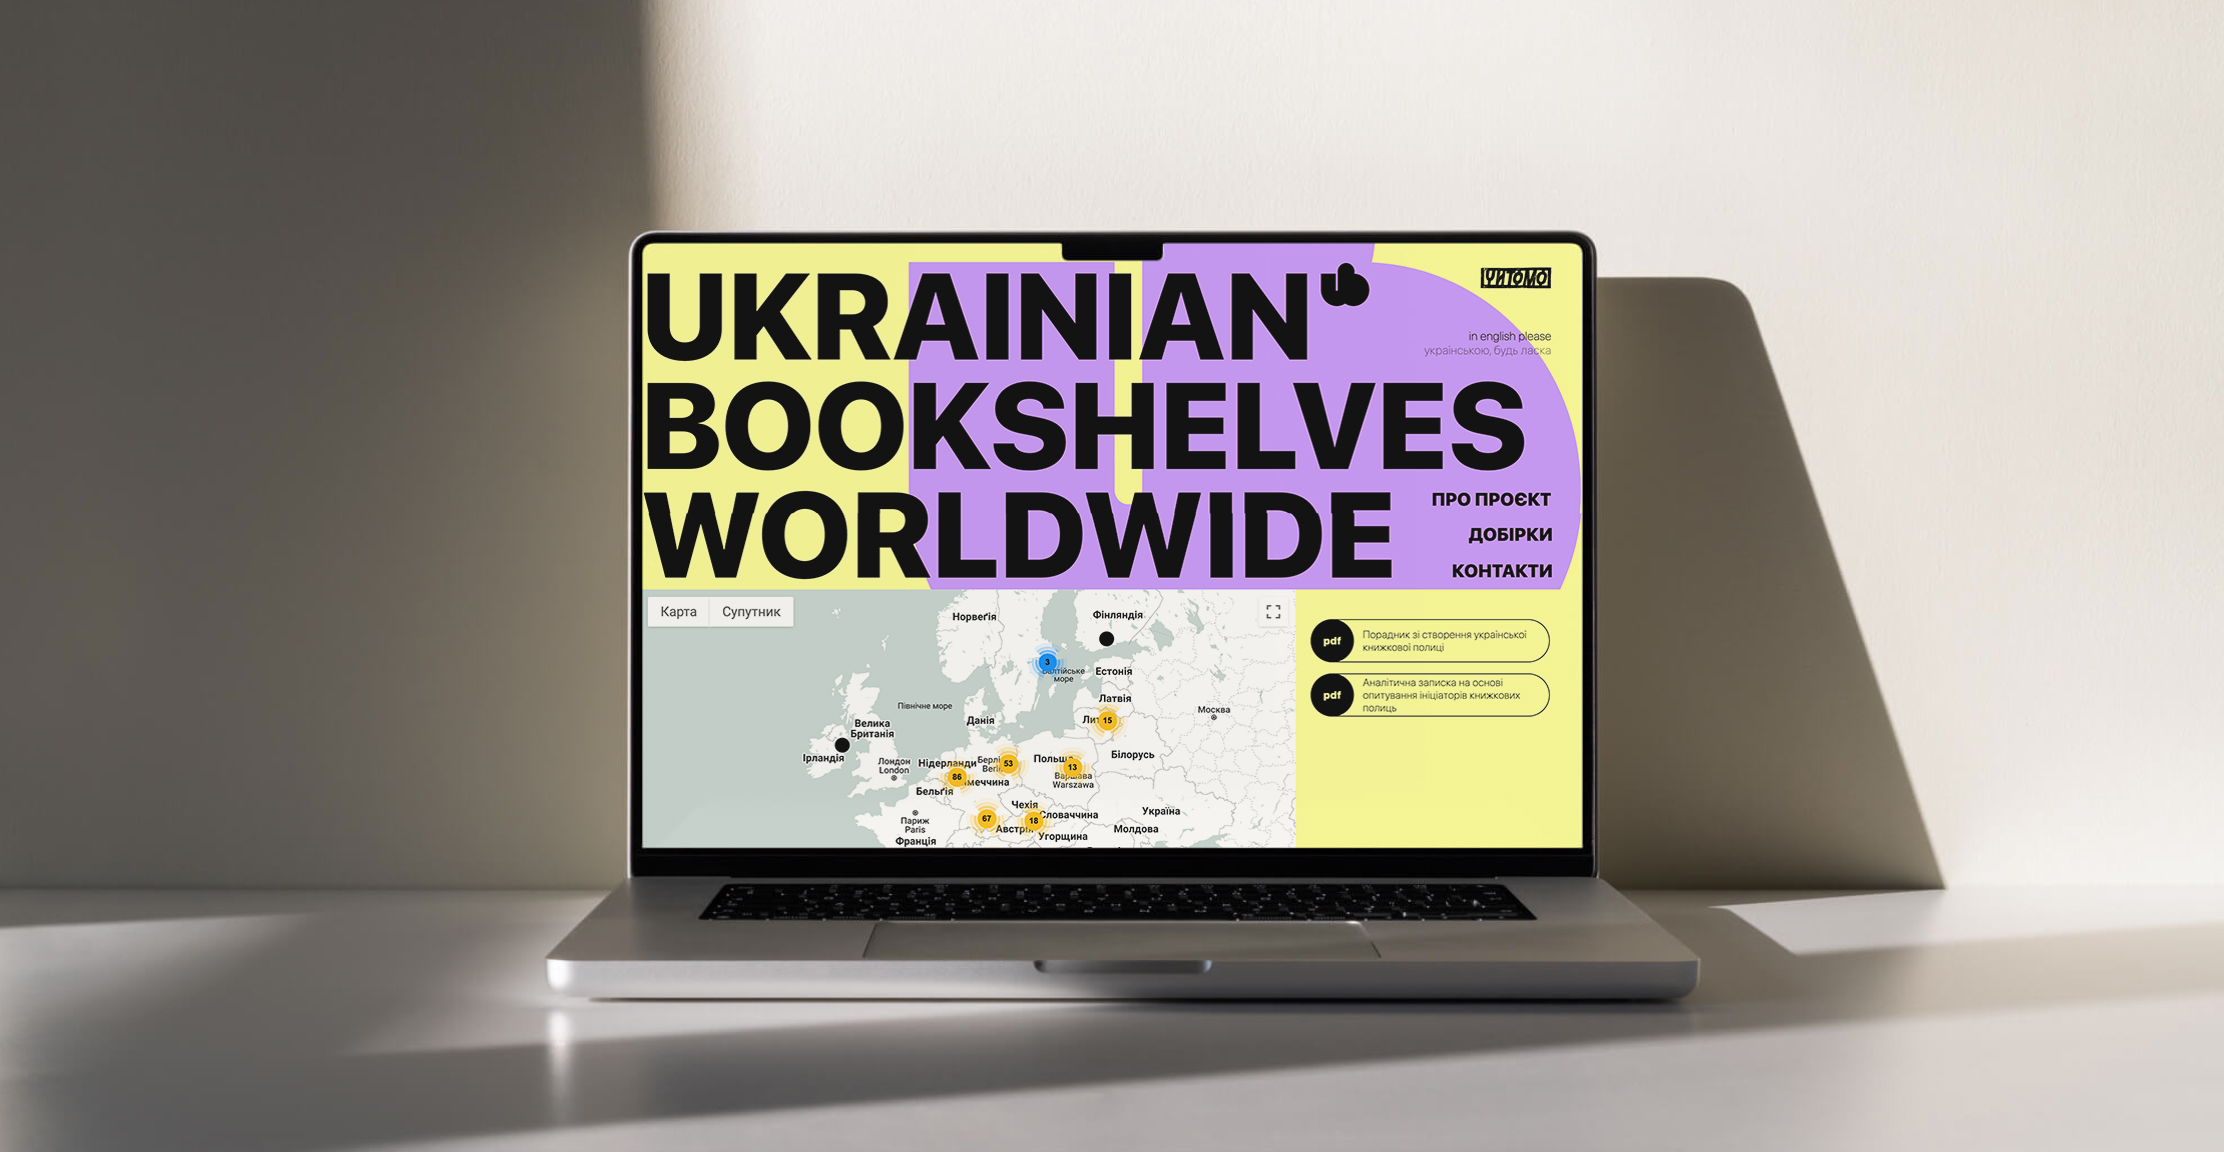 Появилась карта пространств с украинскими книгами за границей